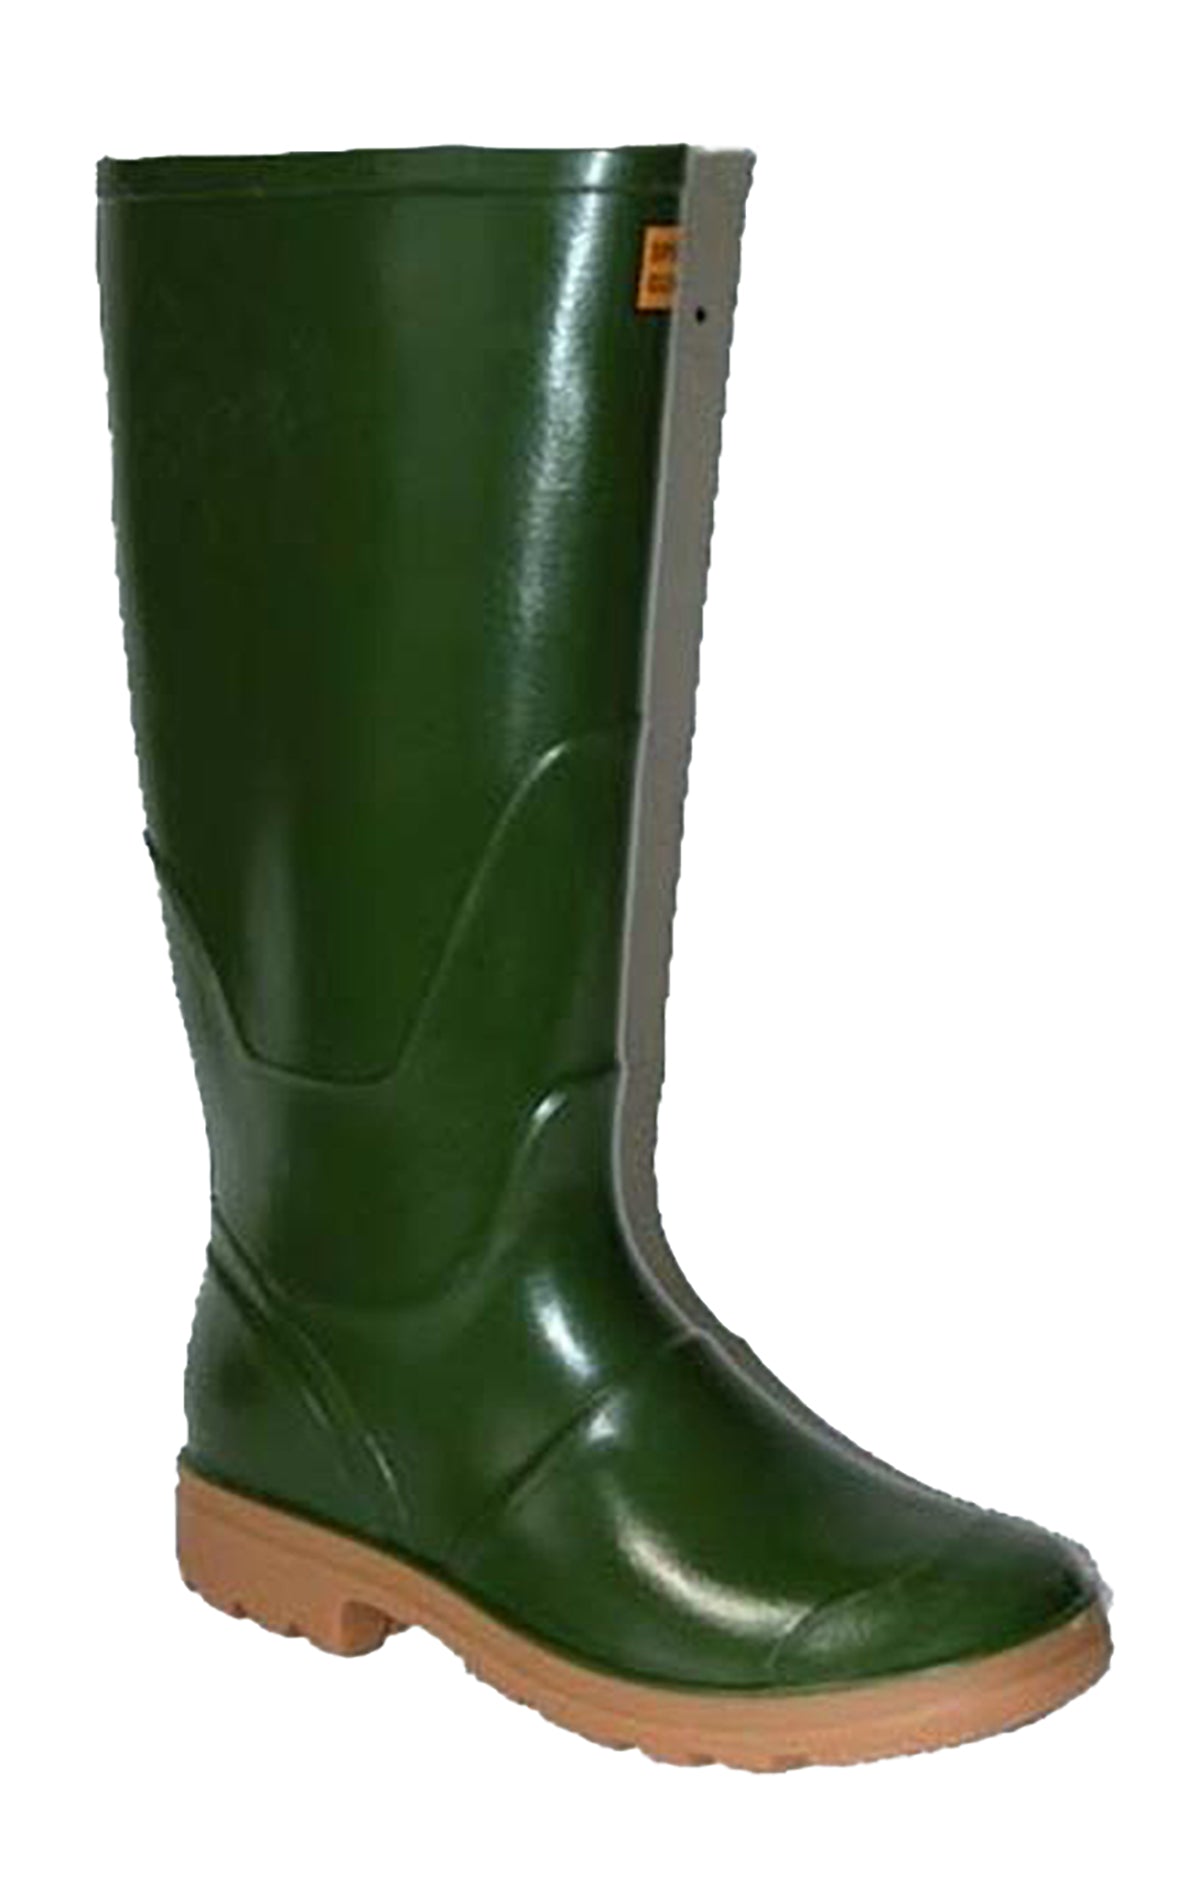 GINOGOMMA Stivali di gomma uomo da pioggia e giardino nel colore verde.